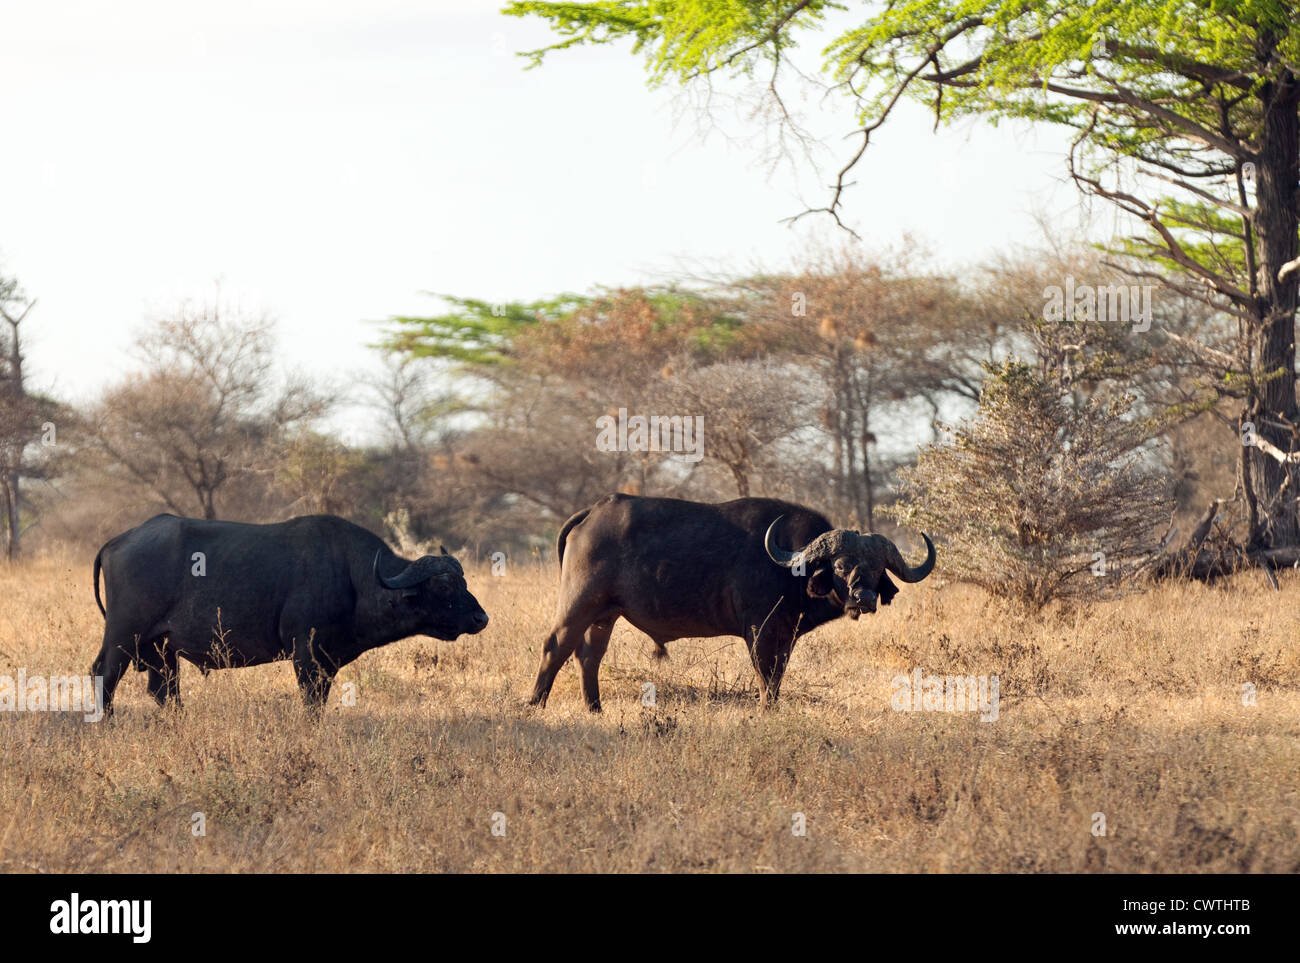 Une paire de buffles d'Afrique (Syncerus caffer), Selous, Tanzanie Afrique Banque D'Images